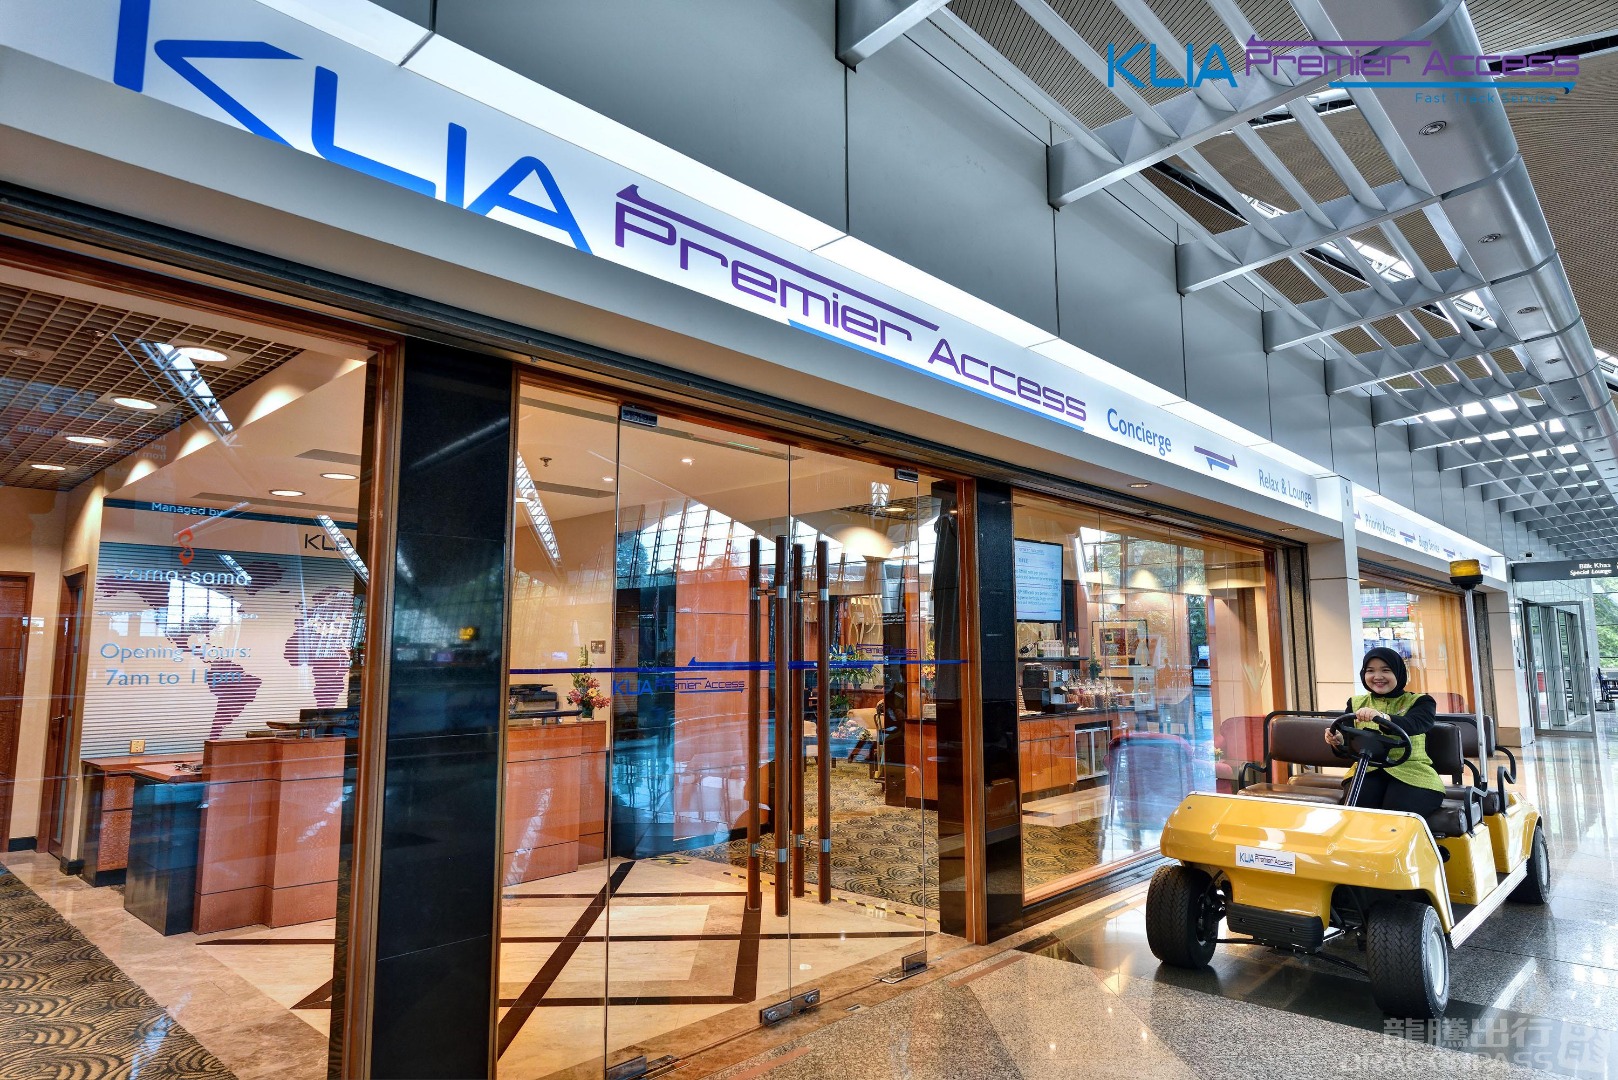 [SALE] Kuala Lumpur International Airport (KUL) Lounge Services Sale 5%